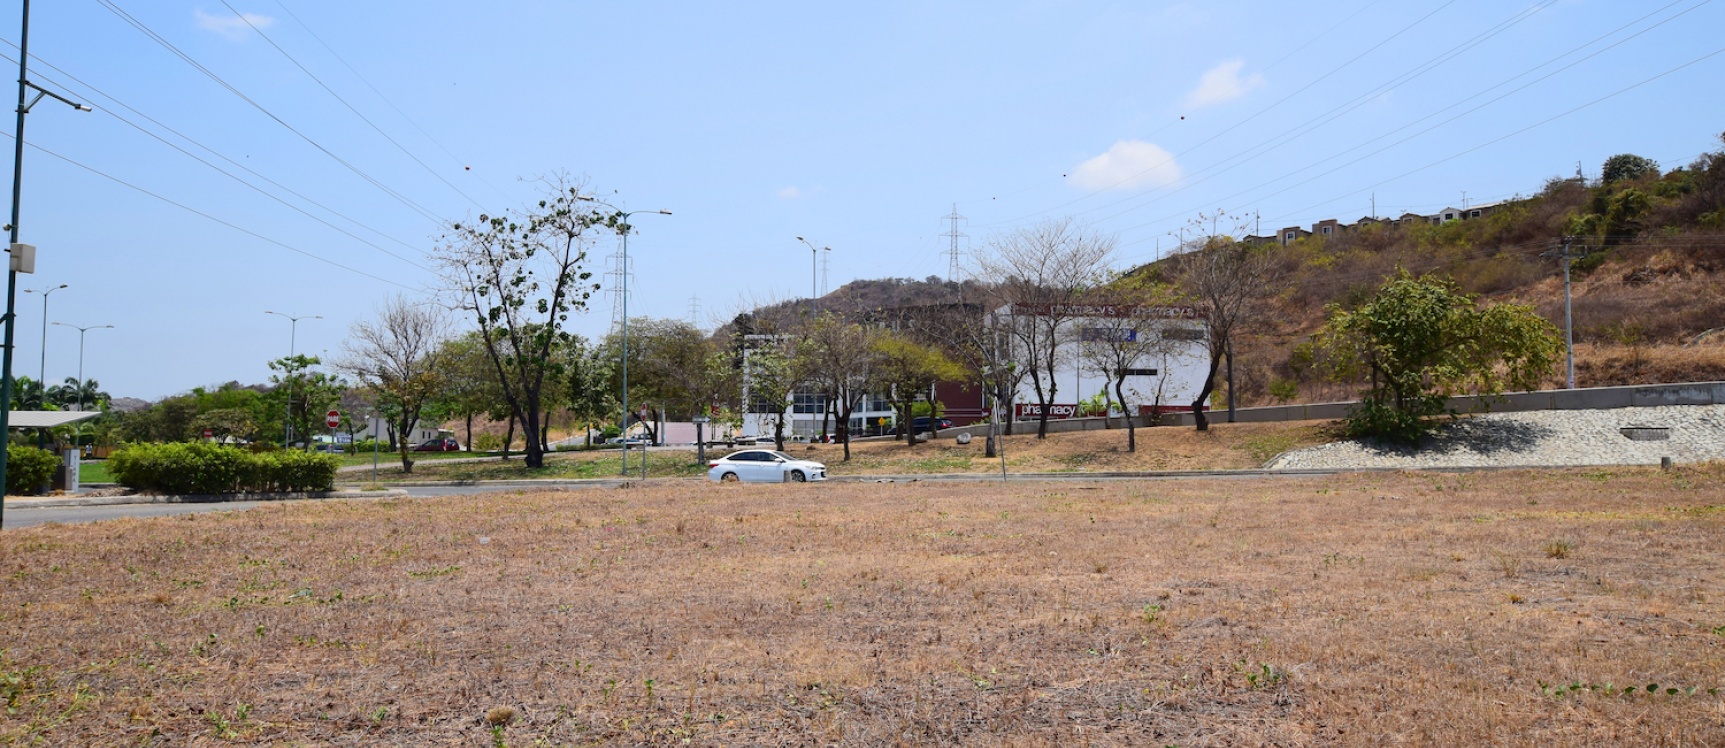 GeoBienes - Terreno en alquiler ubicado en La Joya, Vía la Aurora - Plusvalia Guayaquil Casas de venta y alquiler Inmobiliaria Ecuador